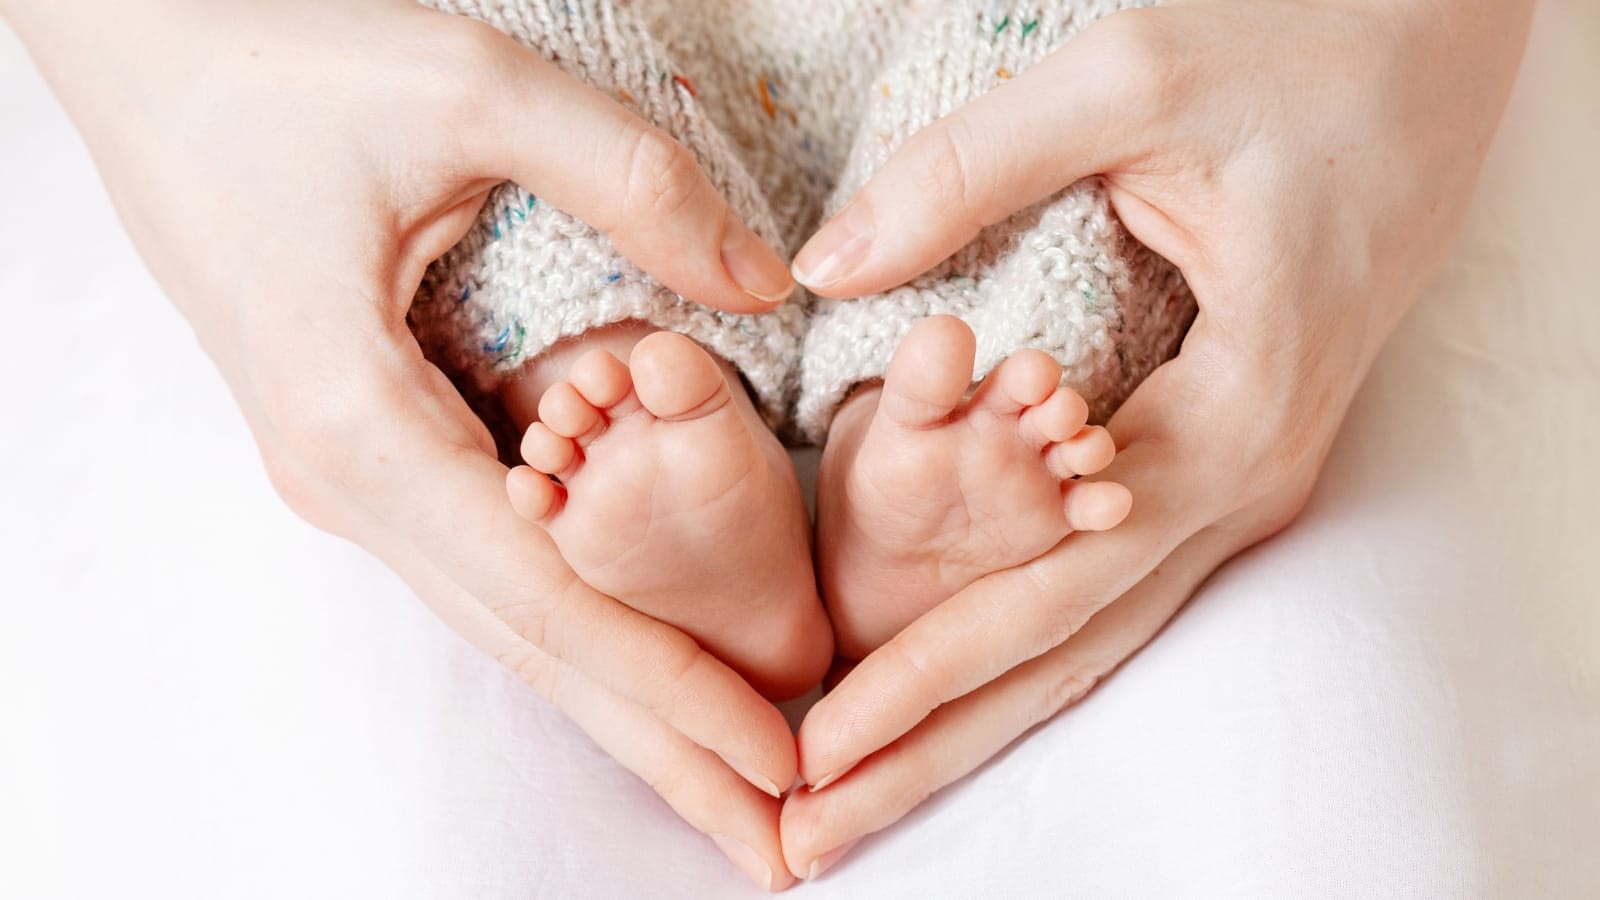 Newborn-Safety-Checklist-for-First-Time-Parents.jpg